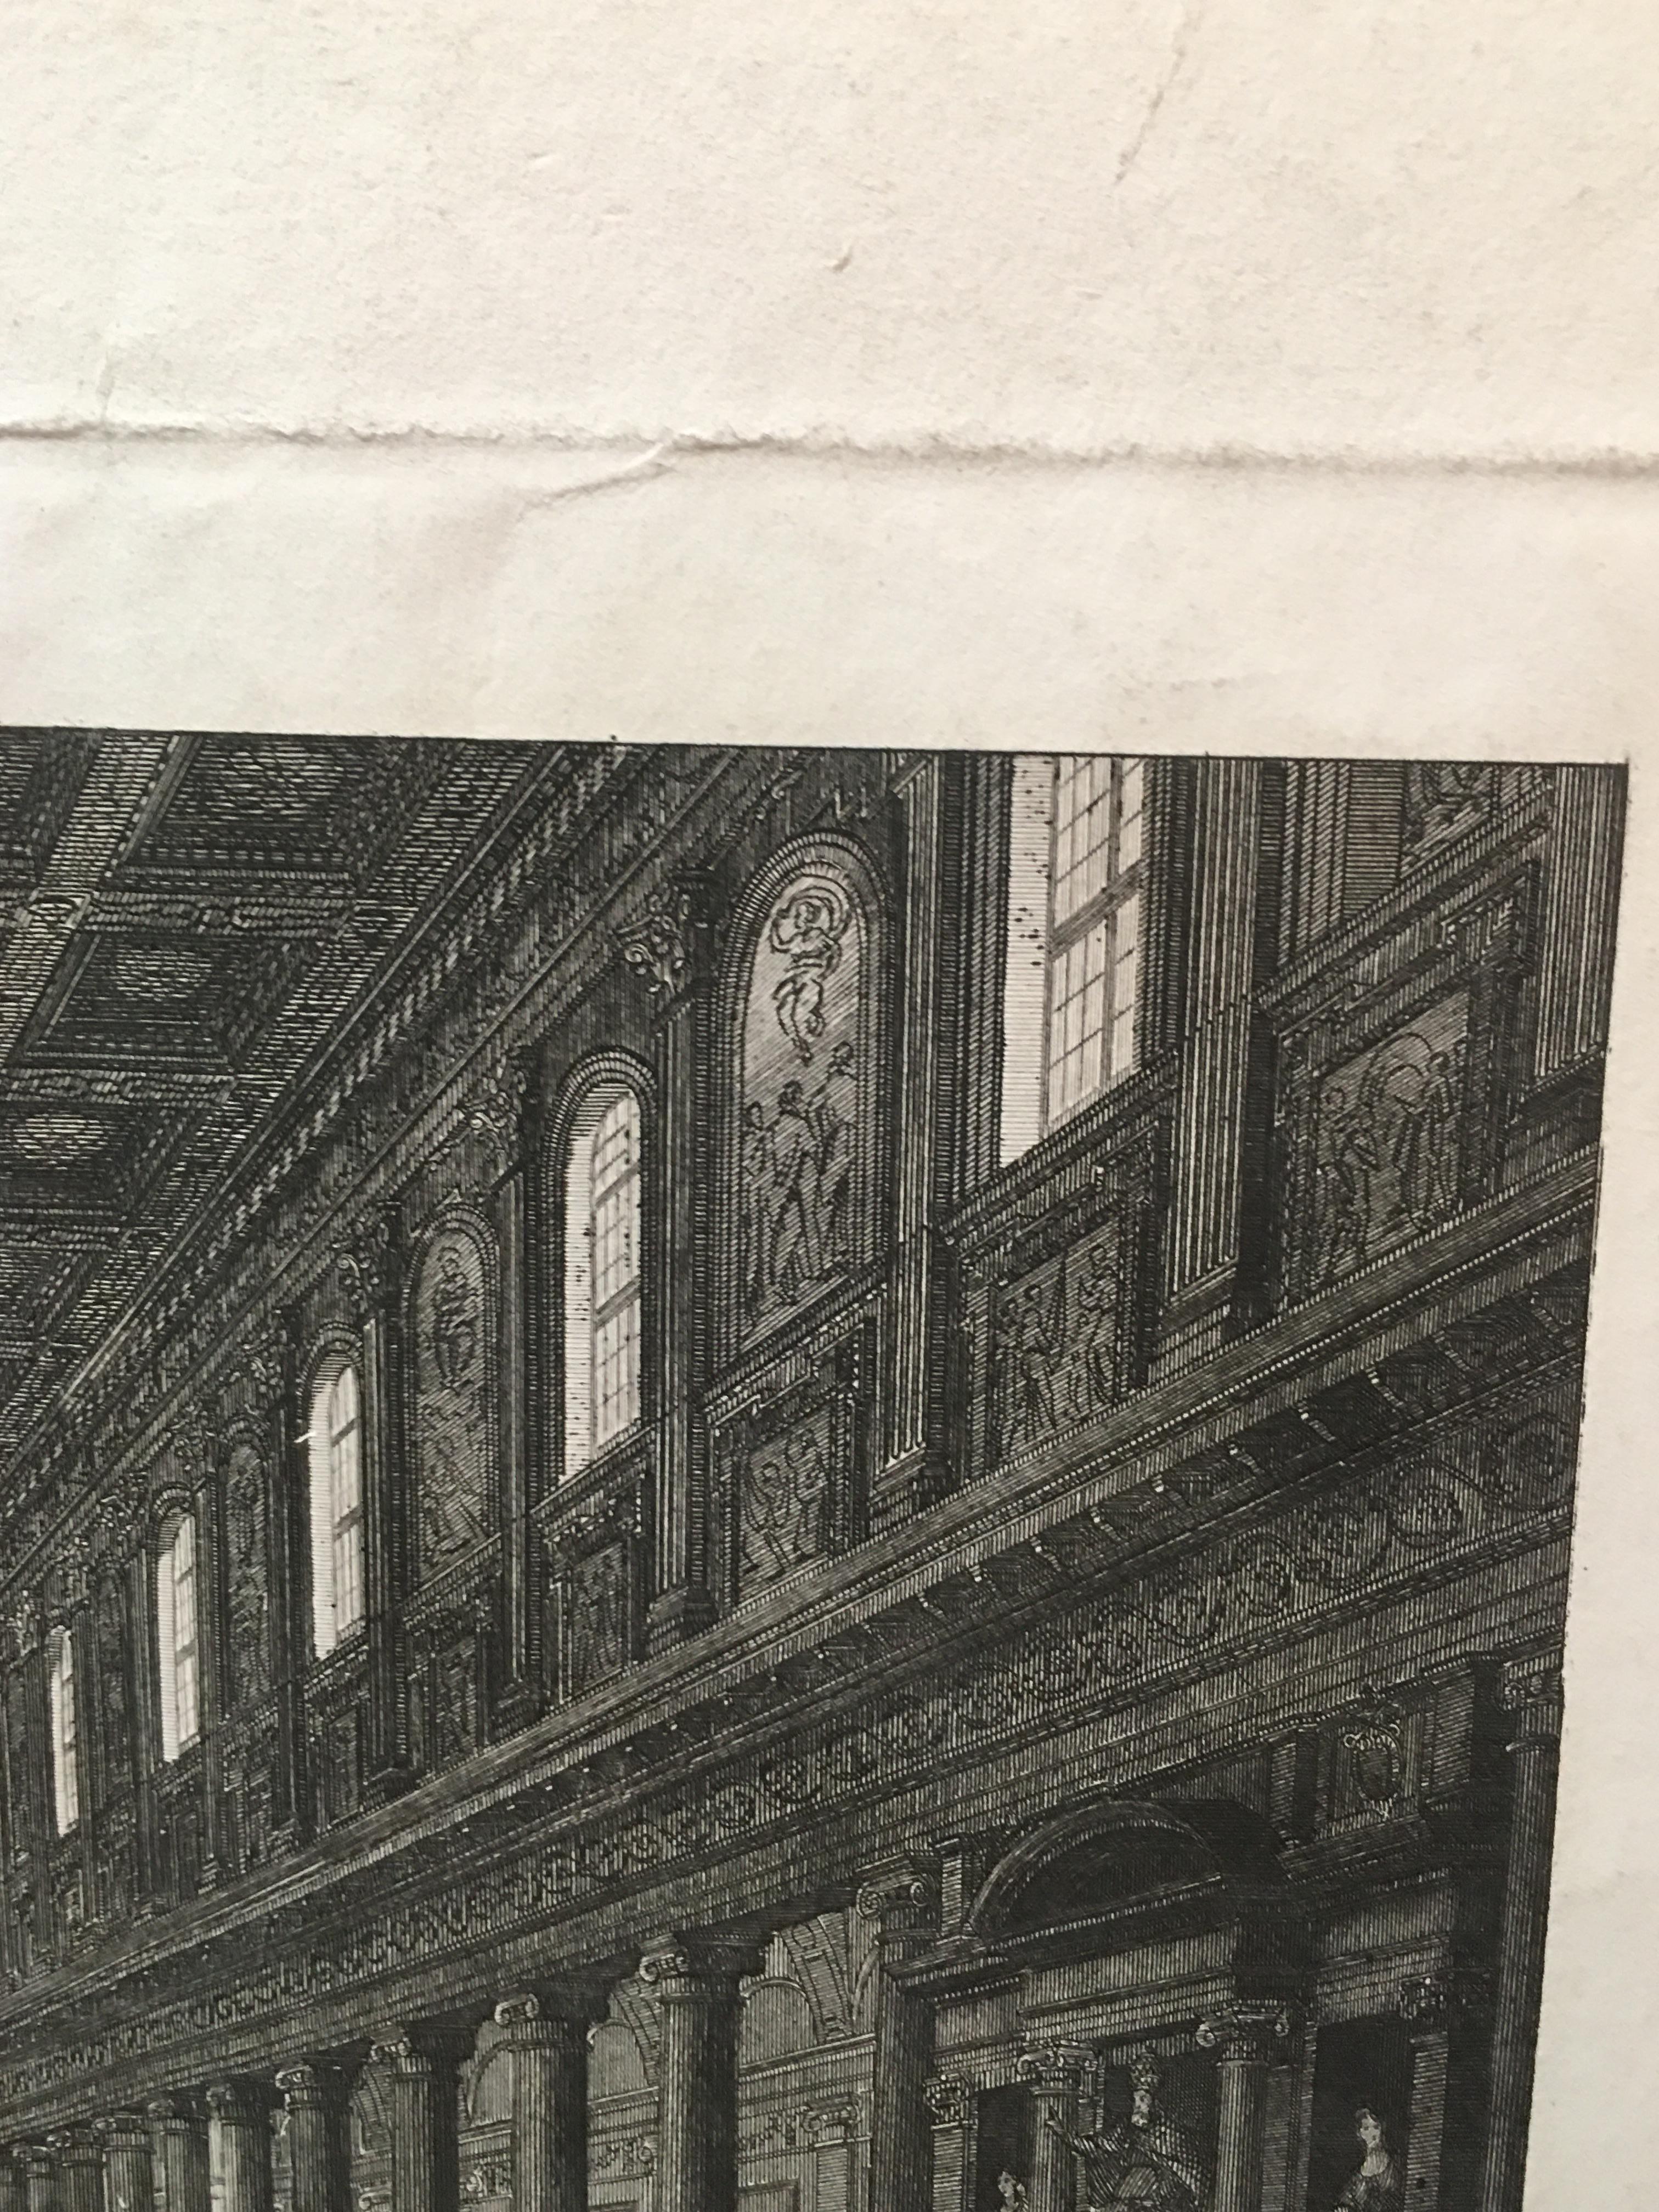 Paper Period Engraving Interior View of Santa Maria Maggiore in Rome